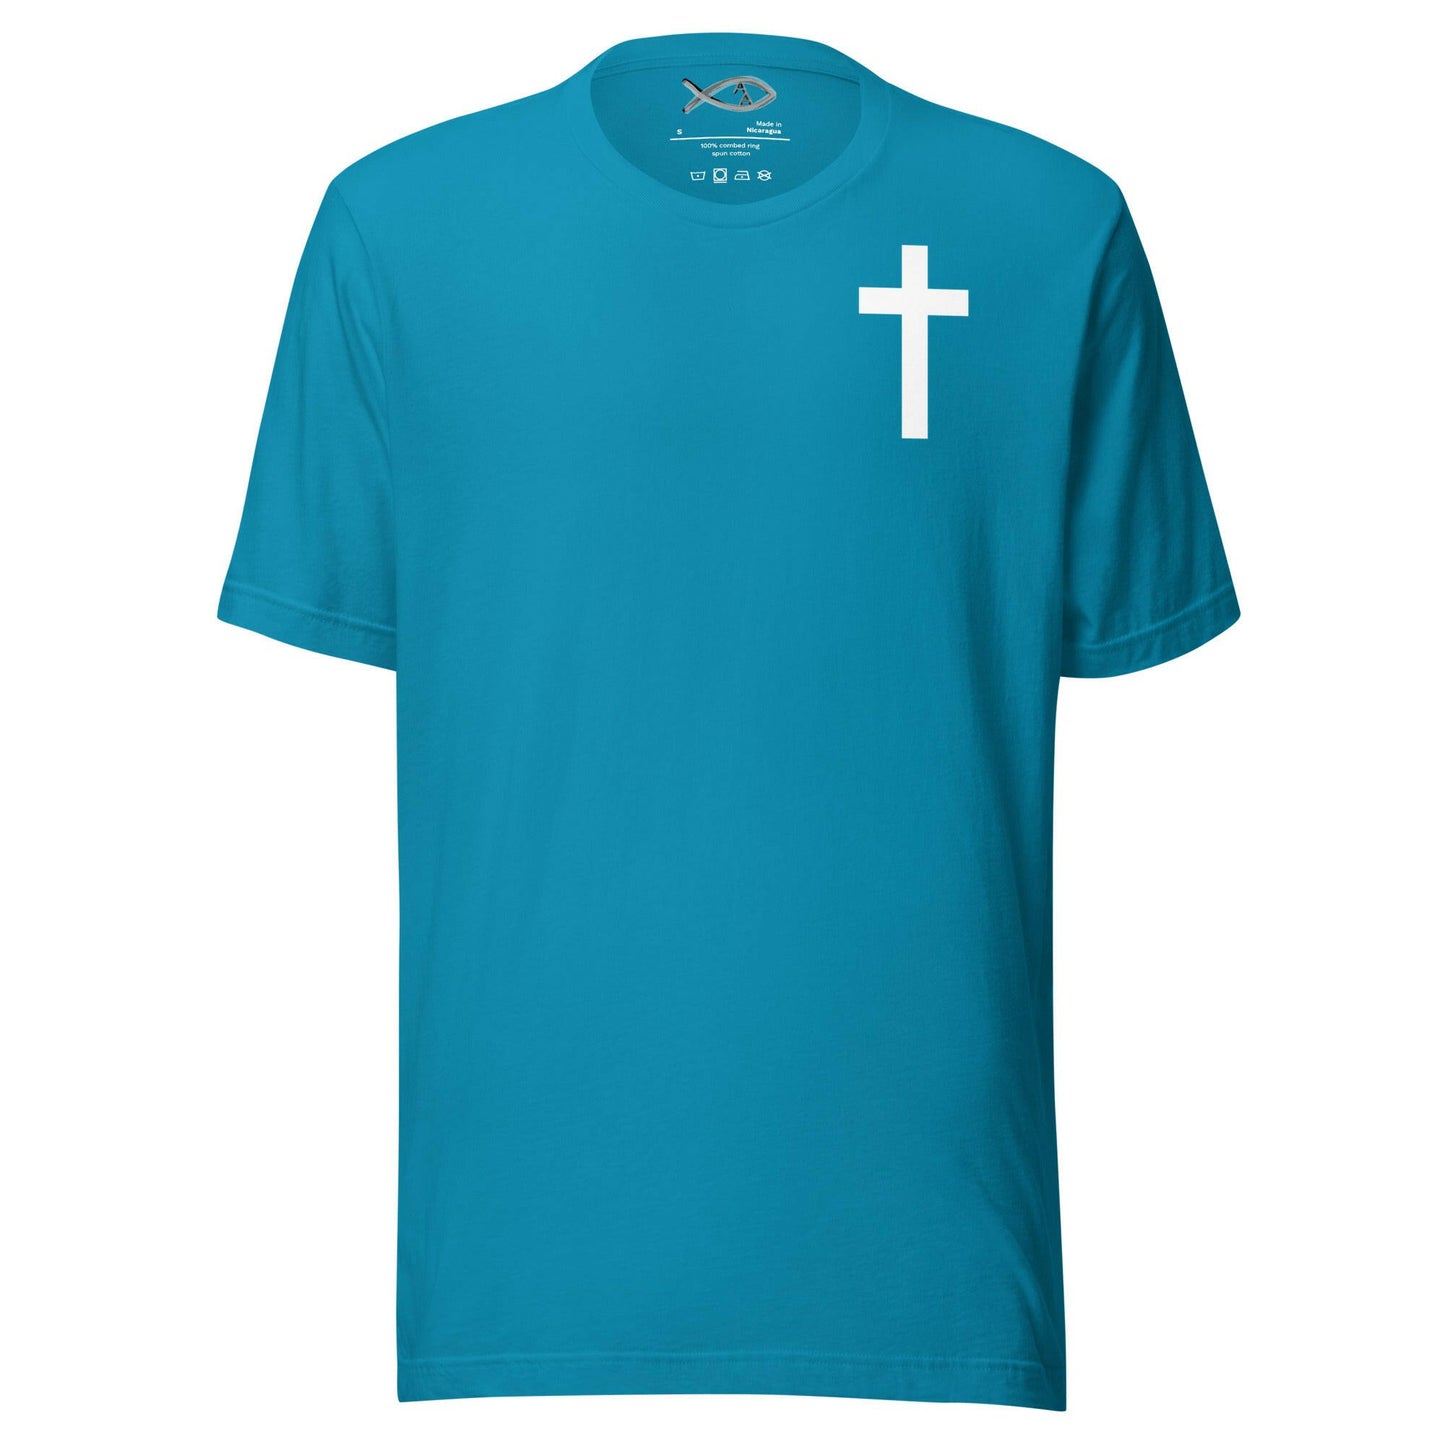 Deuteronomy 31:6 KJV - Unisex T-Shirt (Courage)